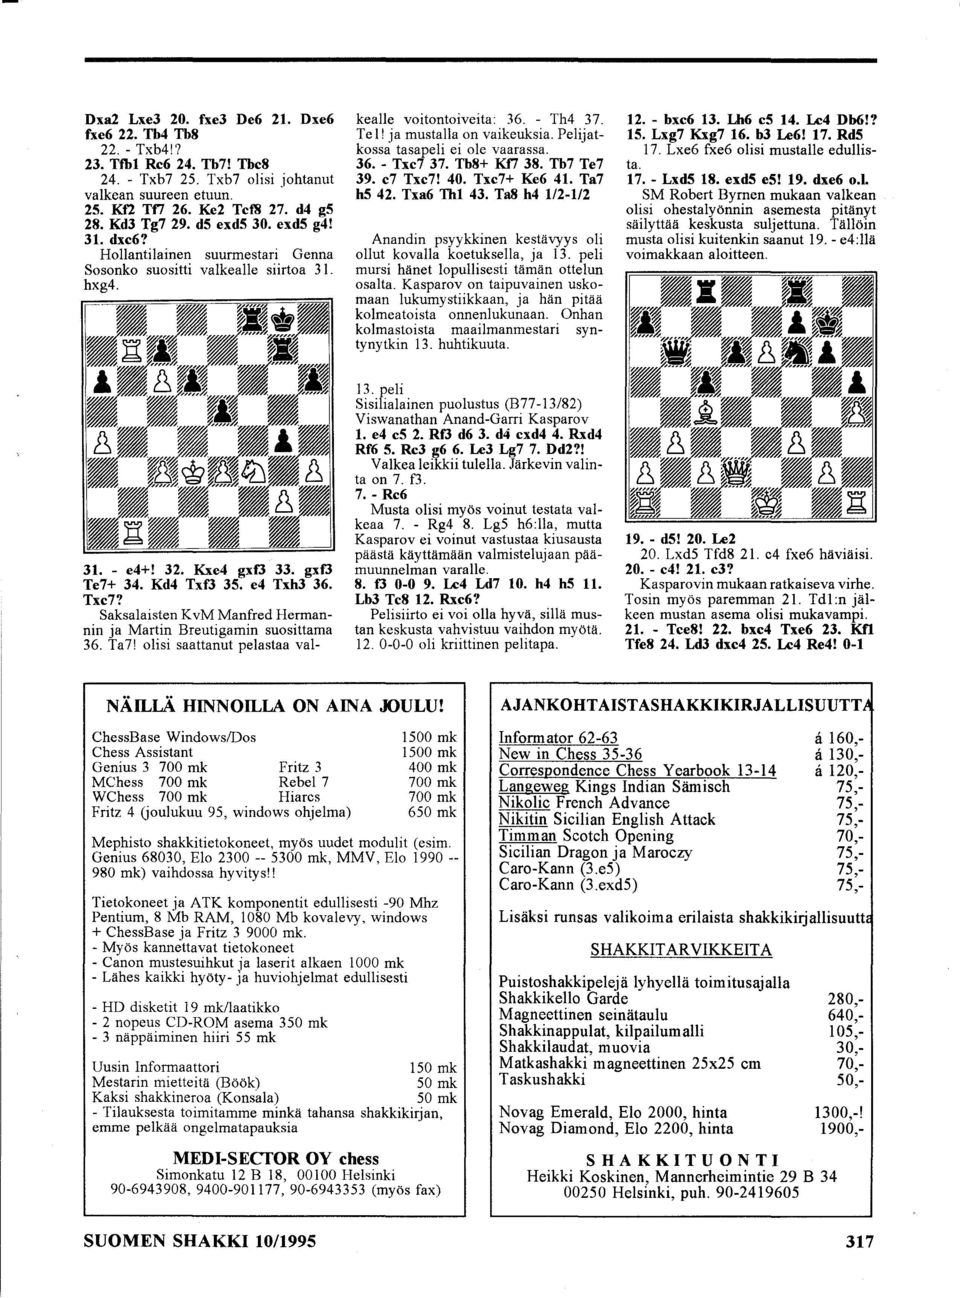 Saksalaisten K vm Manfred Herman nin ja Martin Breutigamin suosittama 36. Ta7! olisi saattanut pelastaa valkealle voitontoiveita: 36. - Th4 37. Te 1! ja mustalla on vaikeuksia.